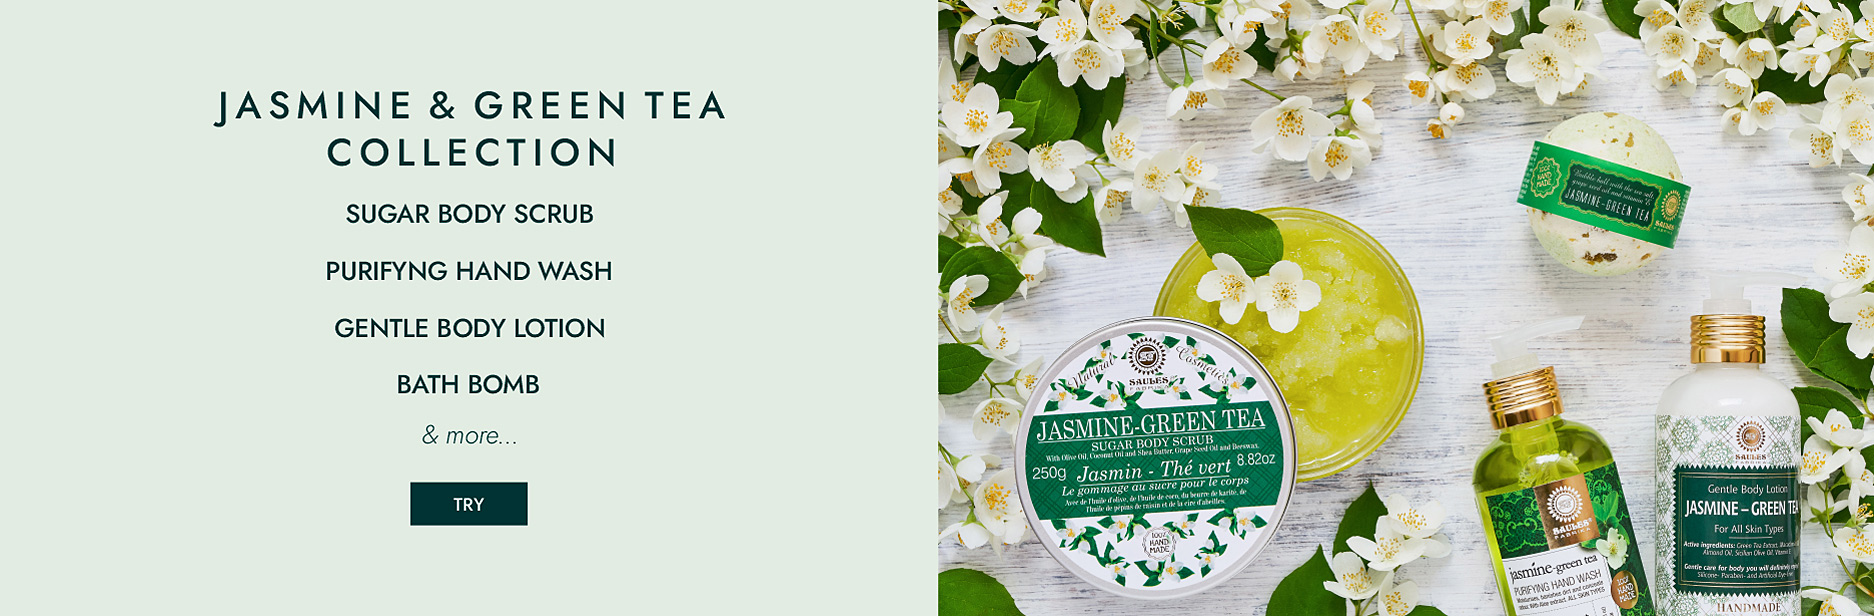 Jasmine & Green Tea Collection